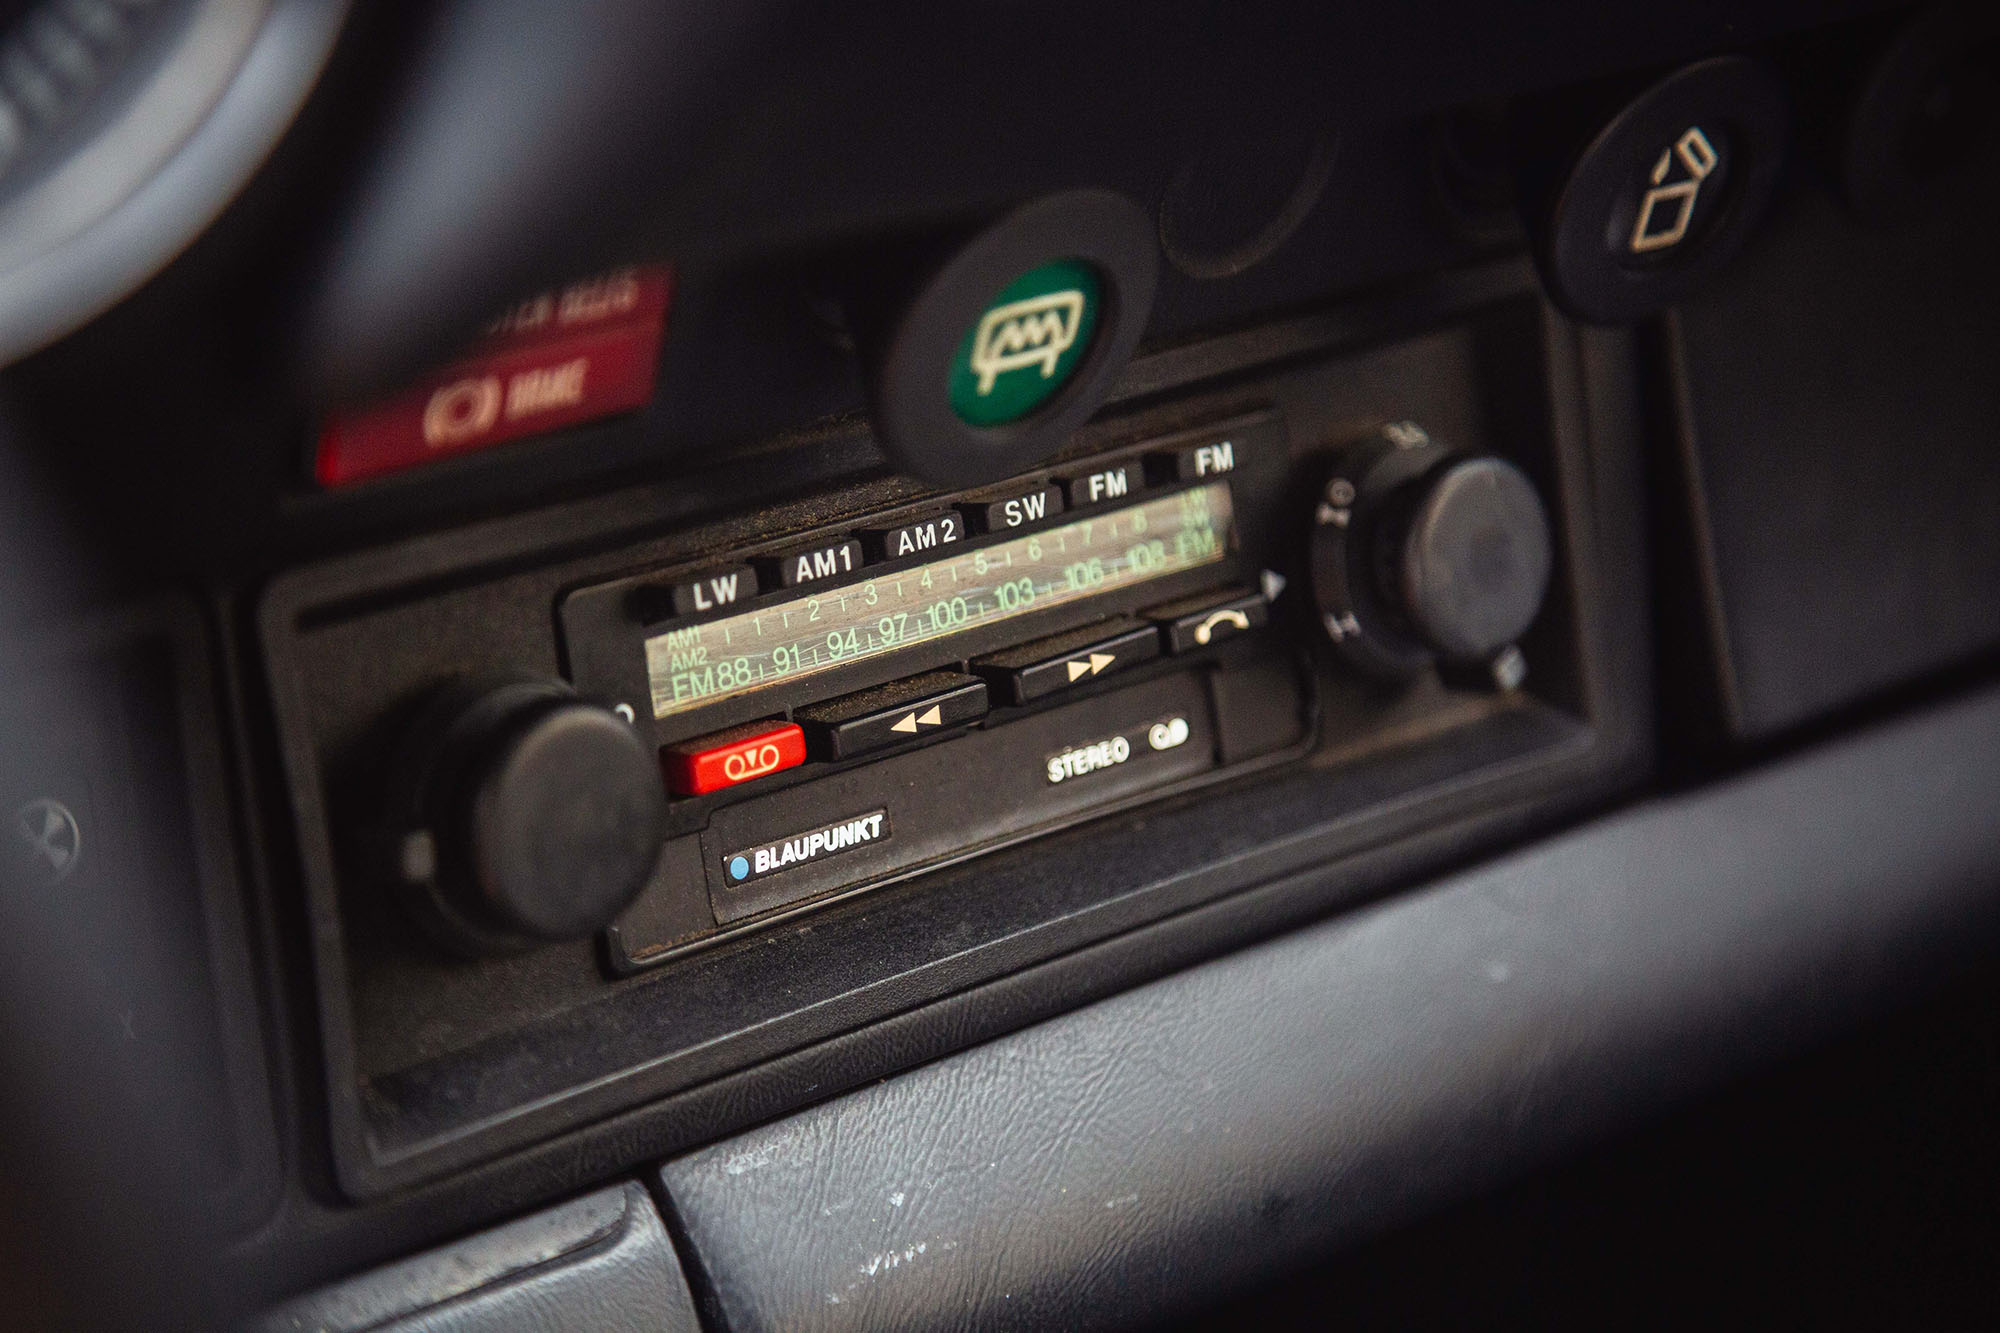 A Single-DIN Blaupunkt radio in a classic Porsche 911 